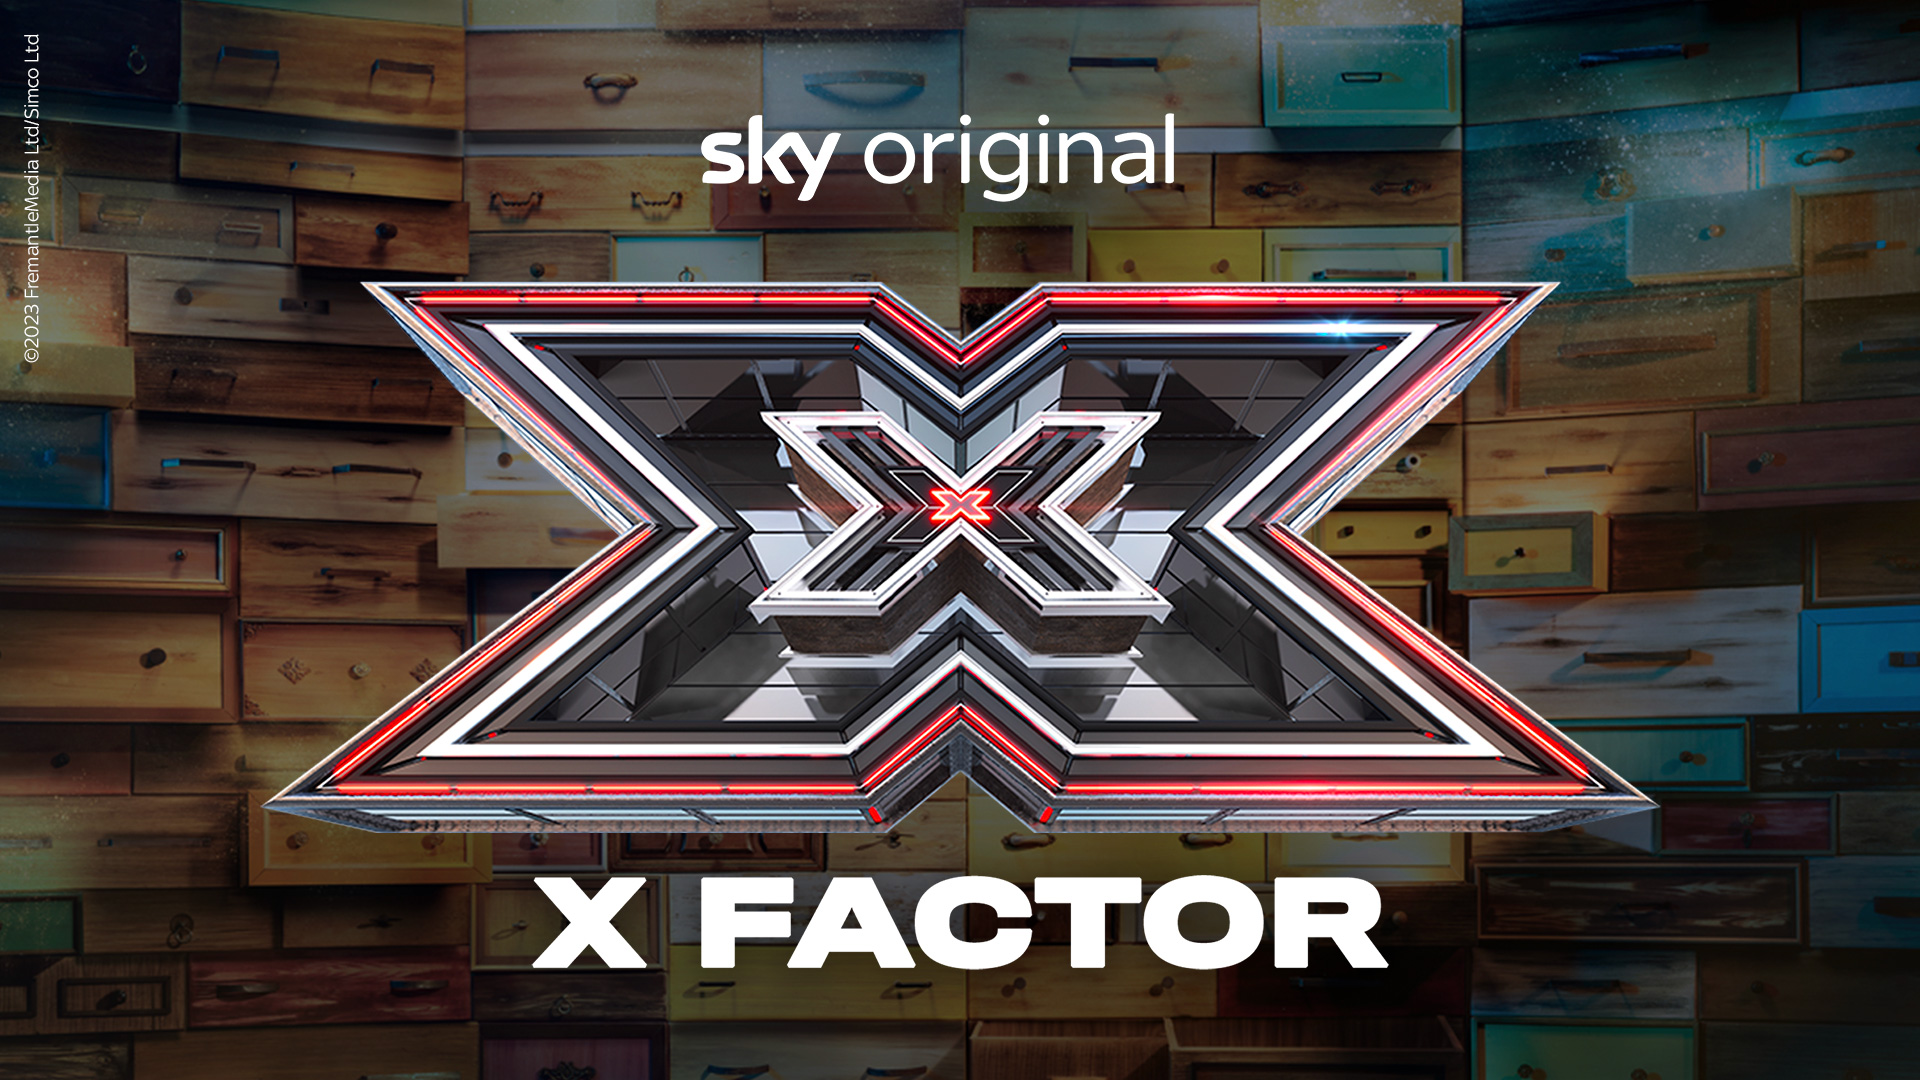 RTL 102.5 è la radio ufficiale di X Factor 2023